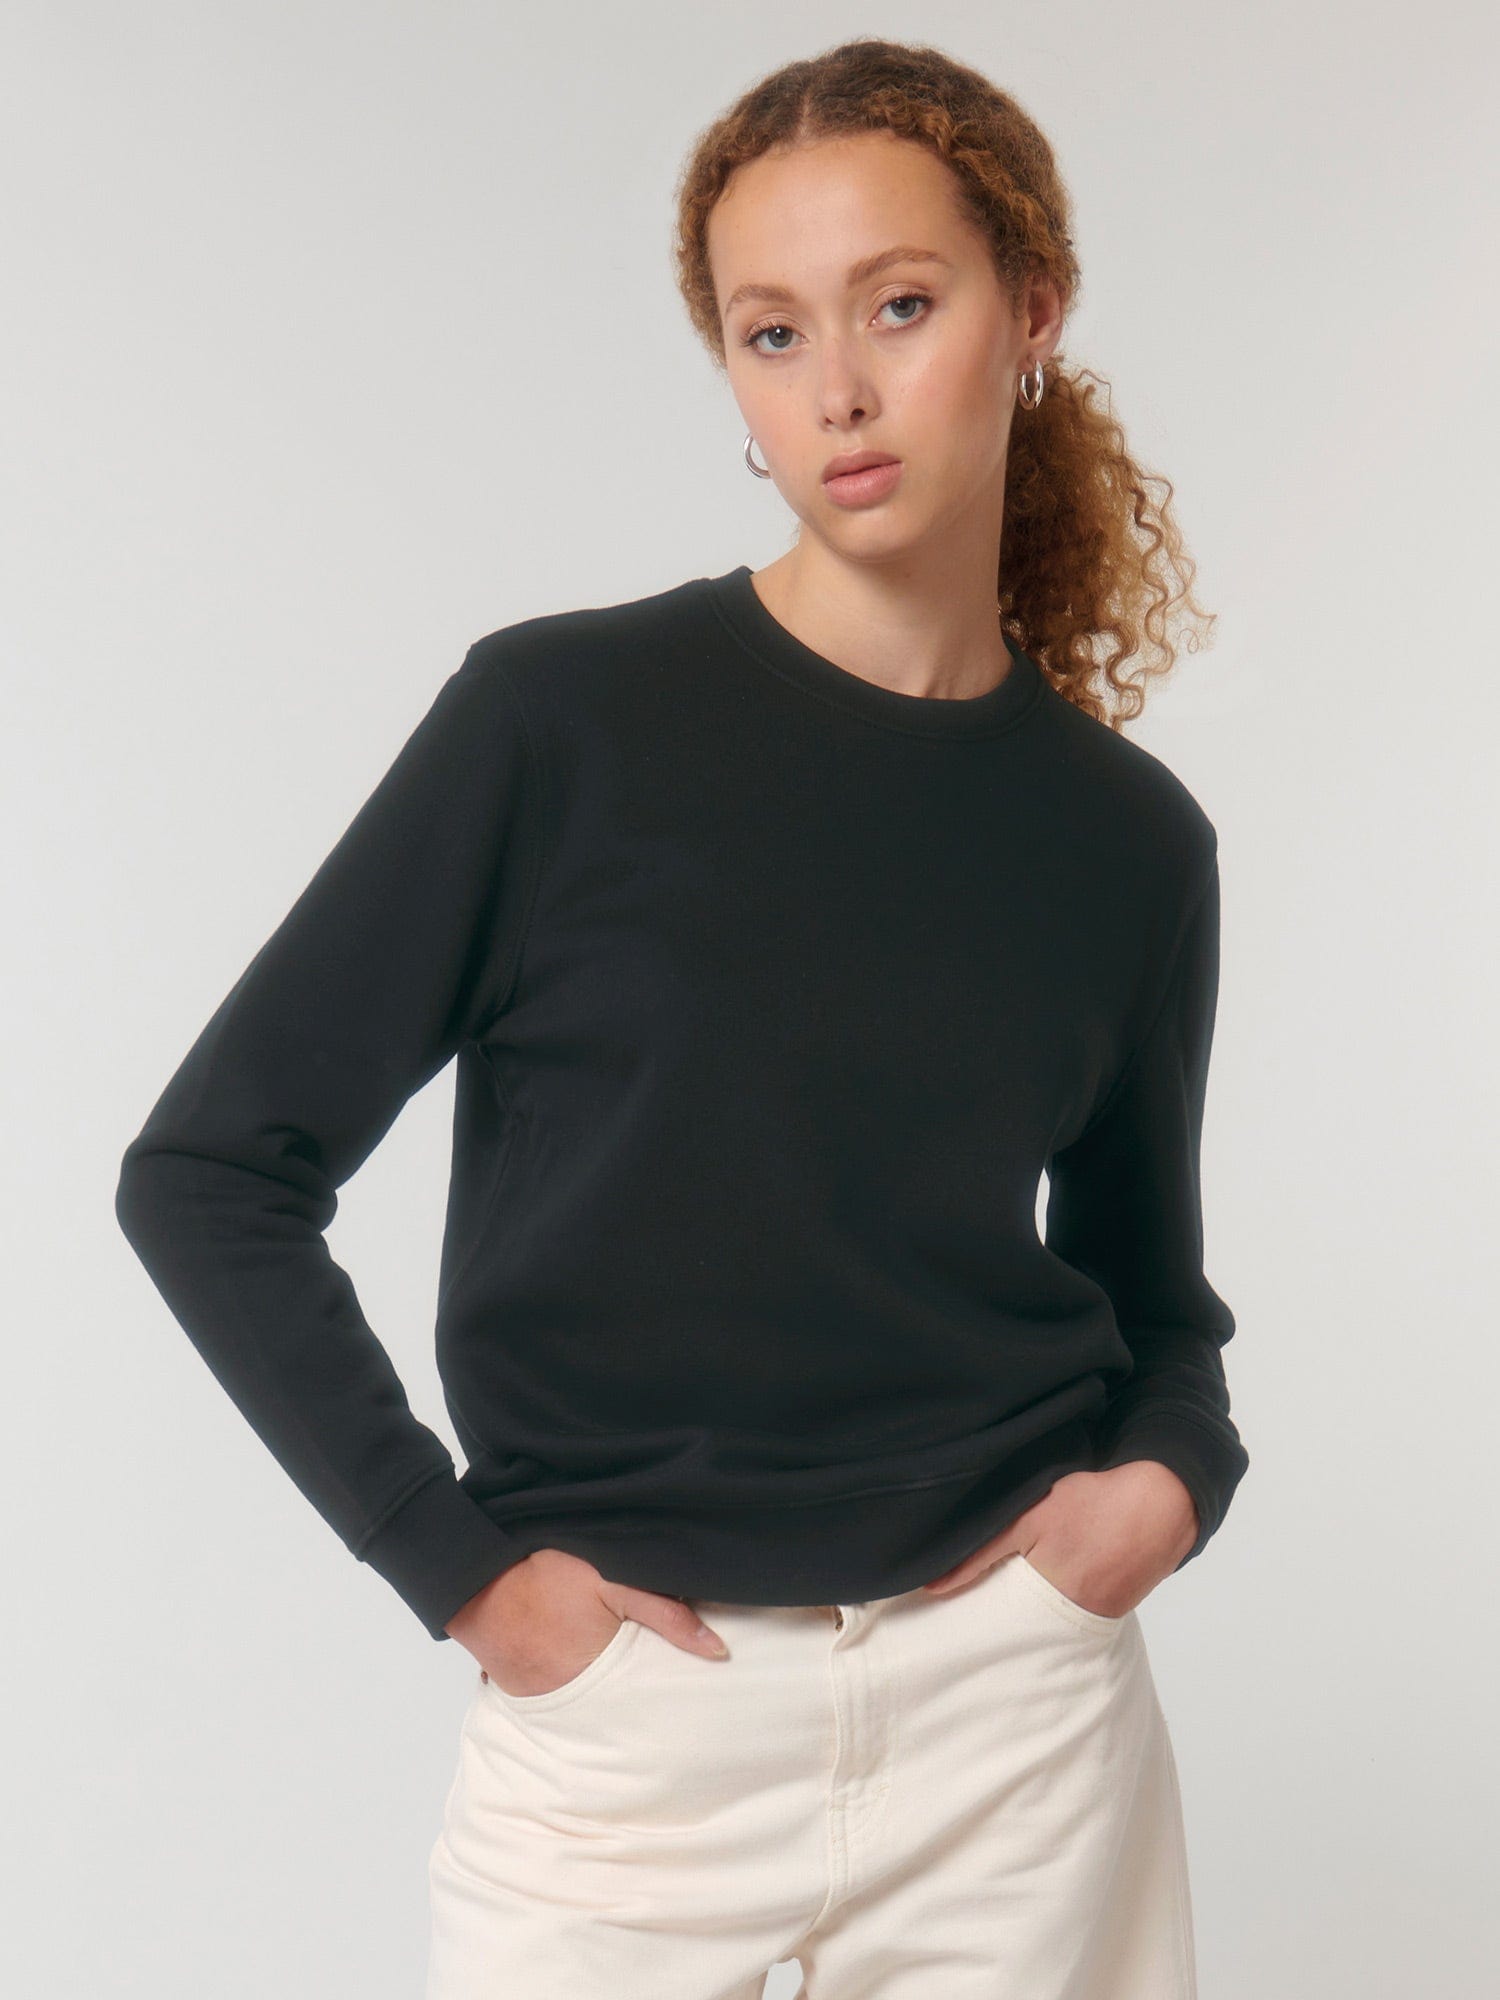 stanley stella unisex organic sweatshirt stsu823 portait black model